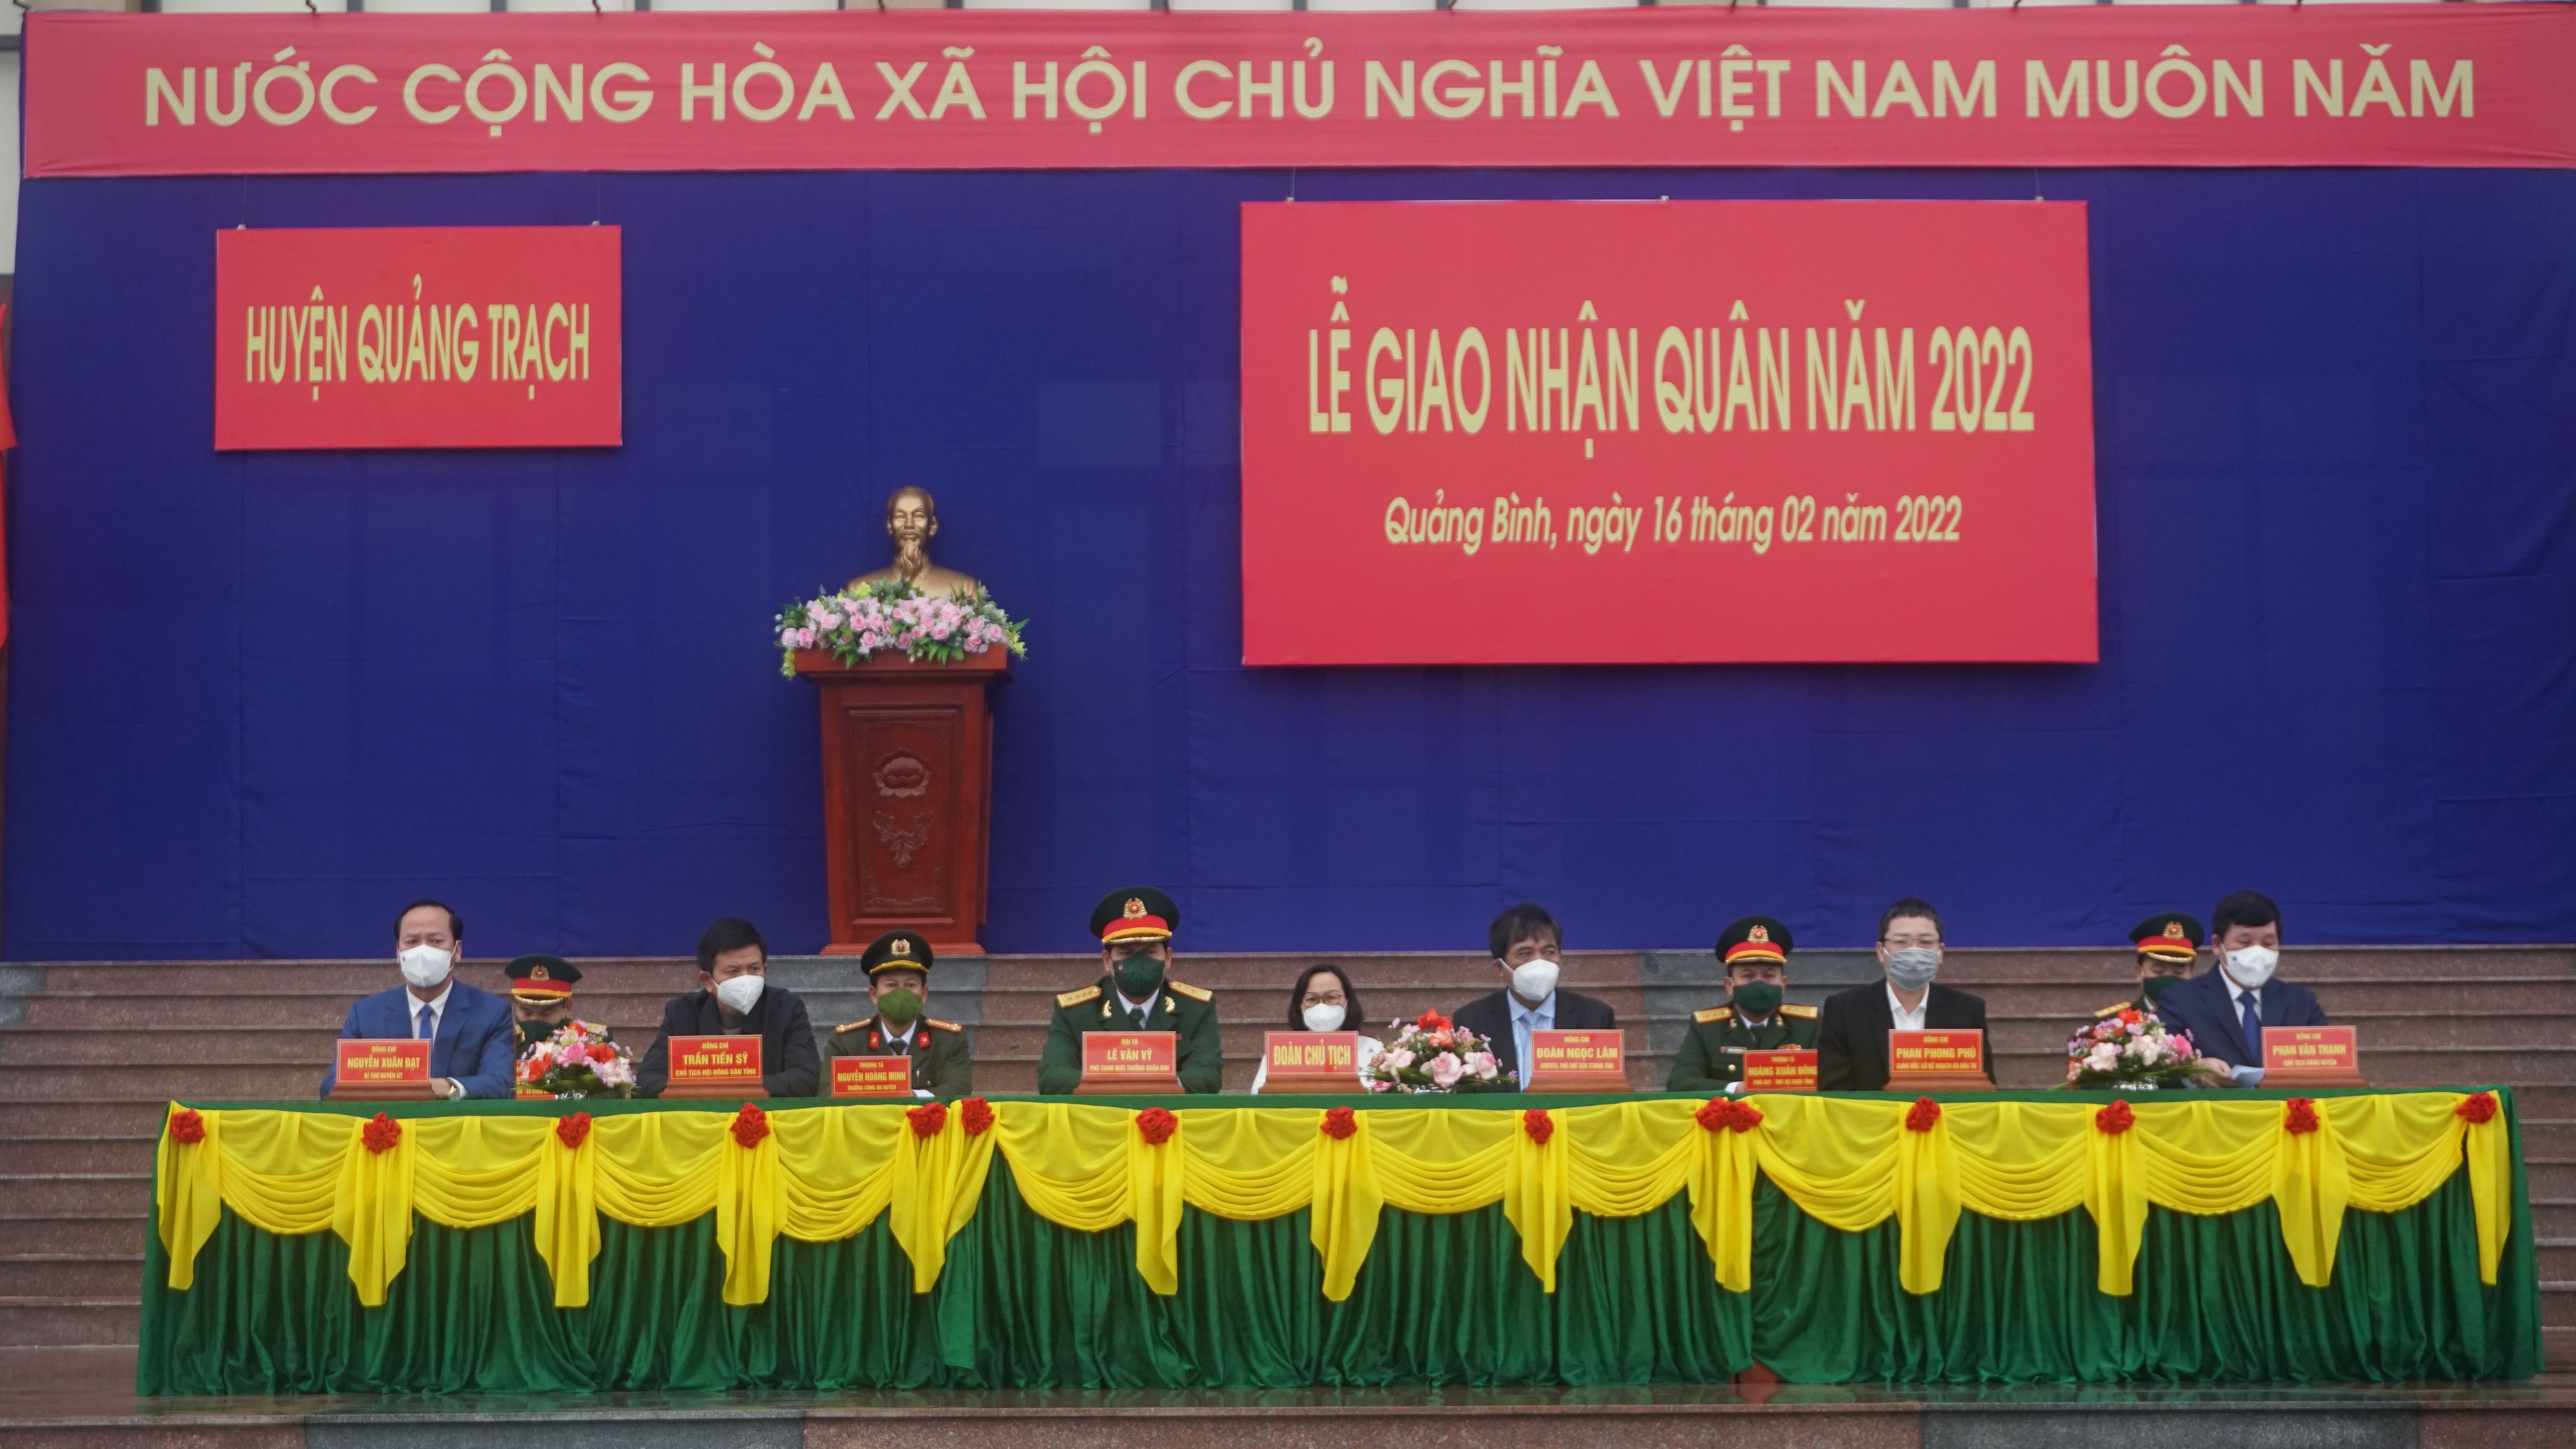 Các đại biểu tham dự lễ giao nhận quân tại huyện Quảng Trạch.